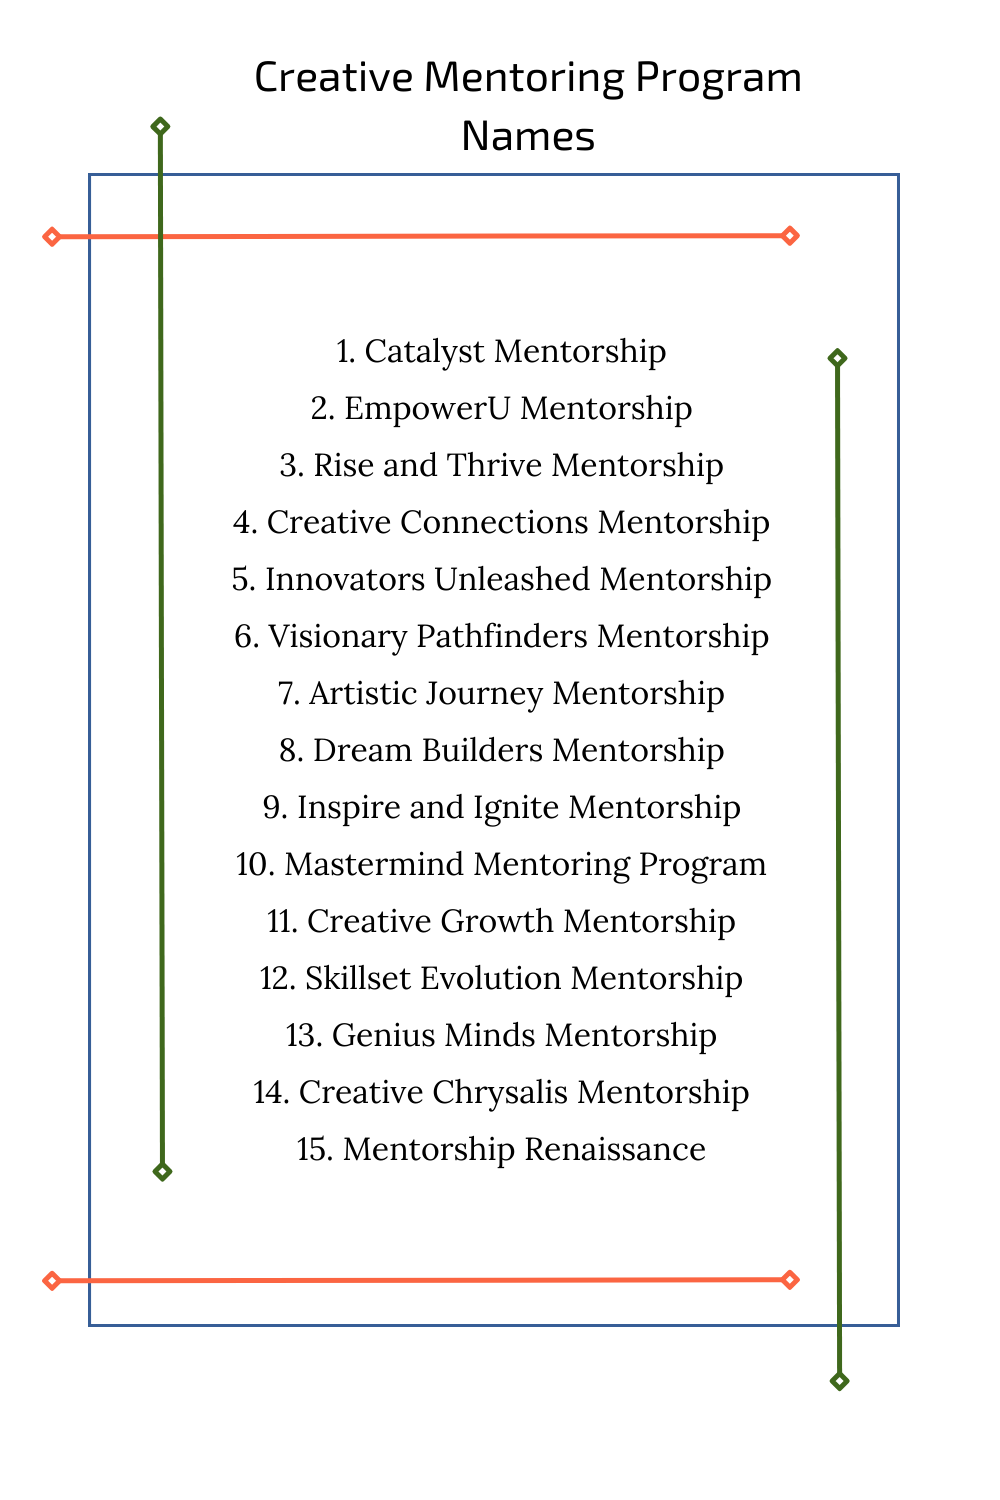 Creative Mentoring Program Names